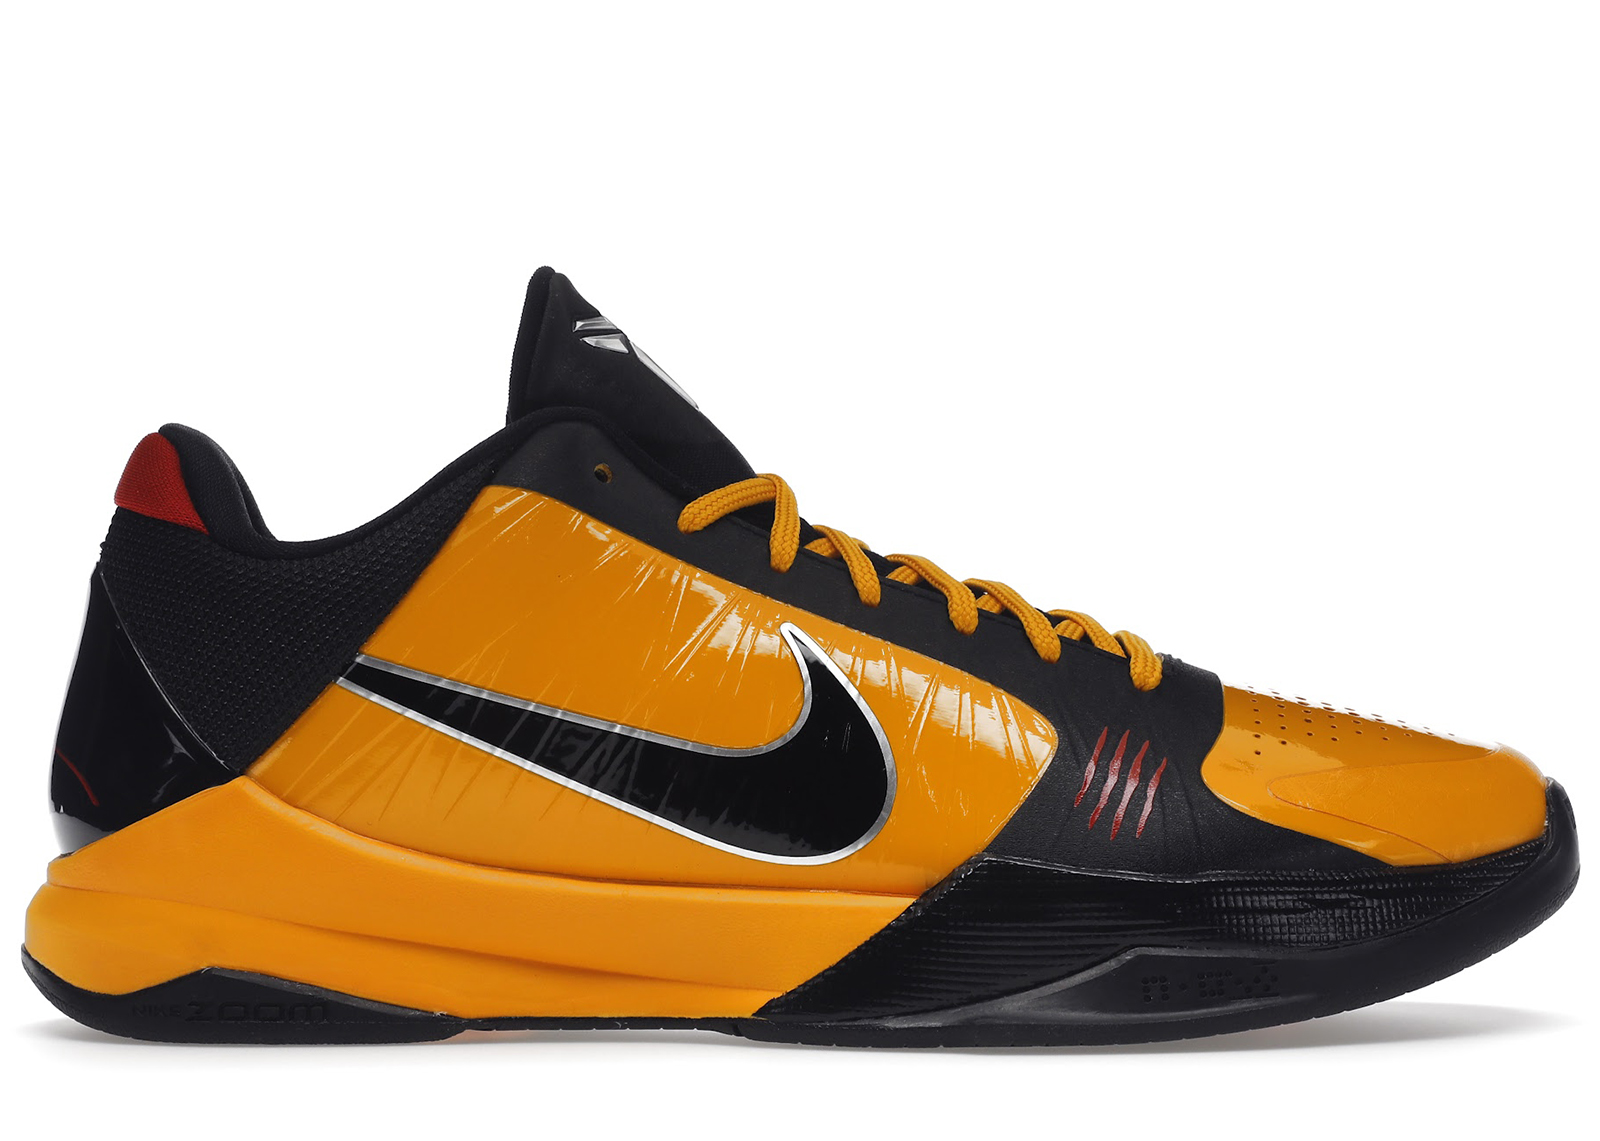 Nike Kobe 5 Protro Bruce Lee - CD4991-700